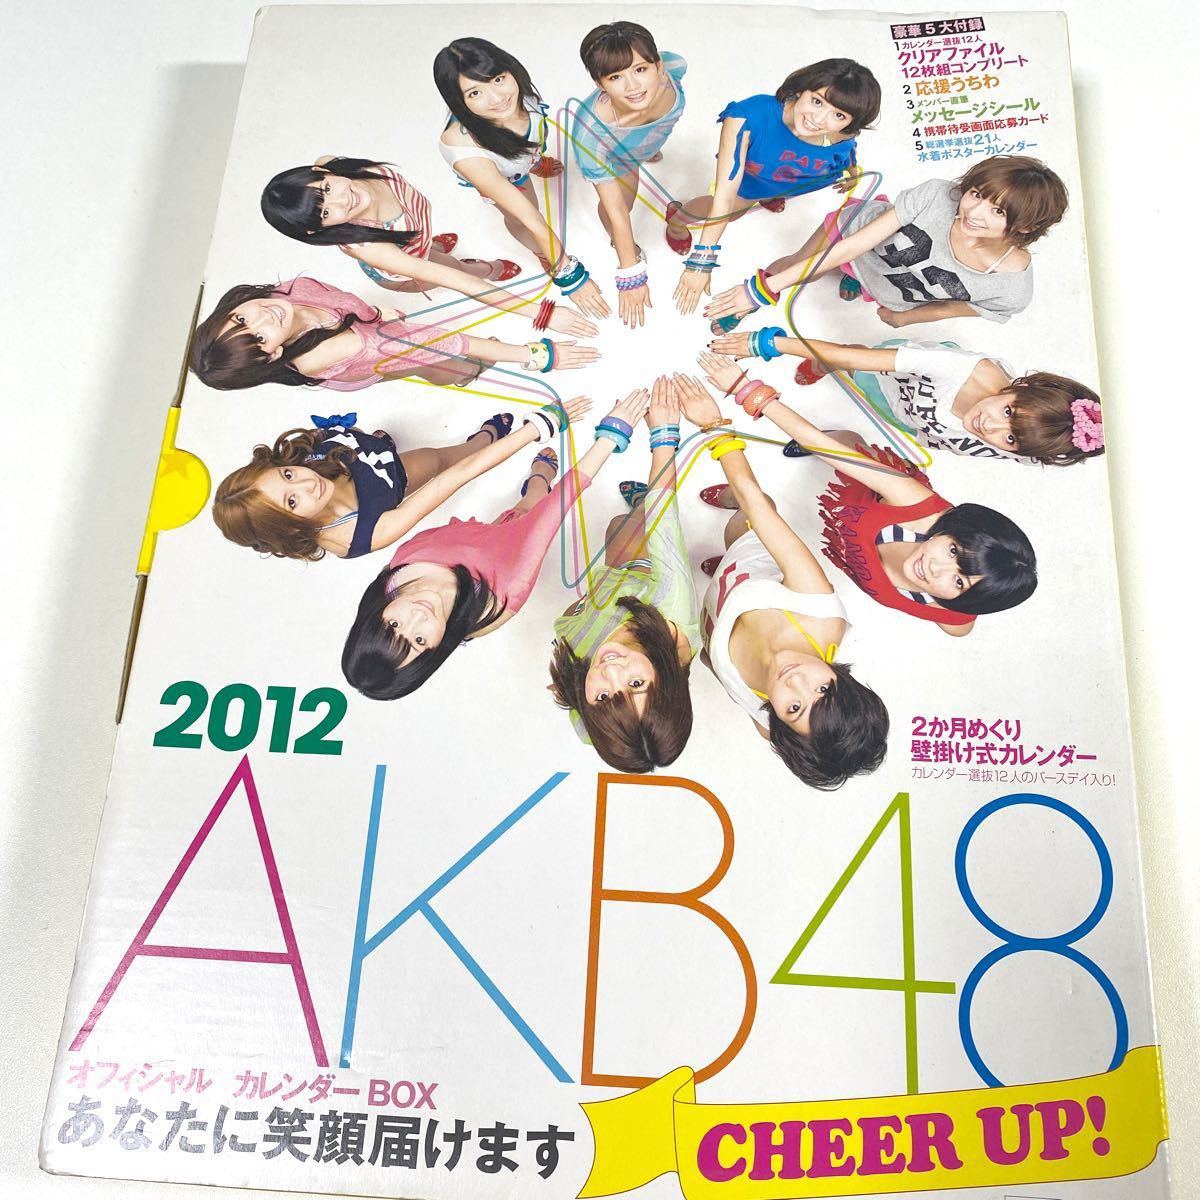 Paypayフリマ Akb48 オフィシャルカレンダーbox 12 Cheerup